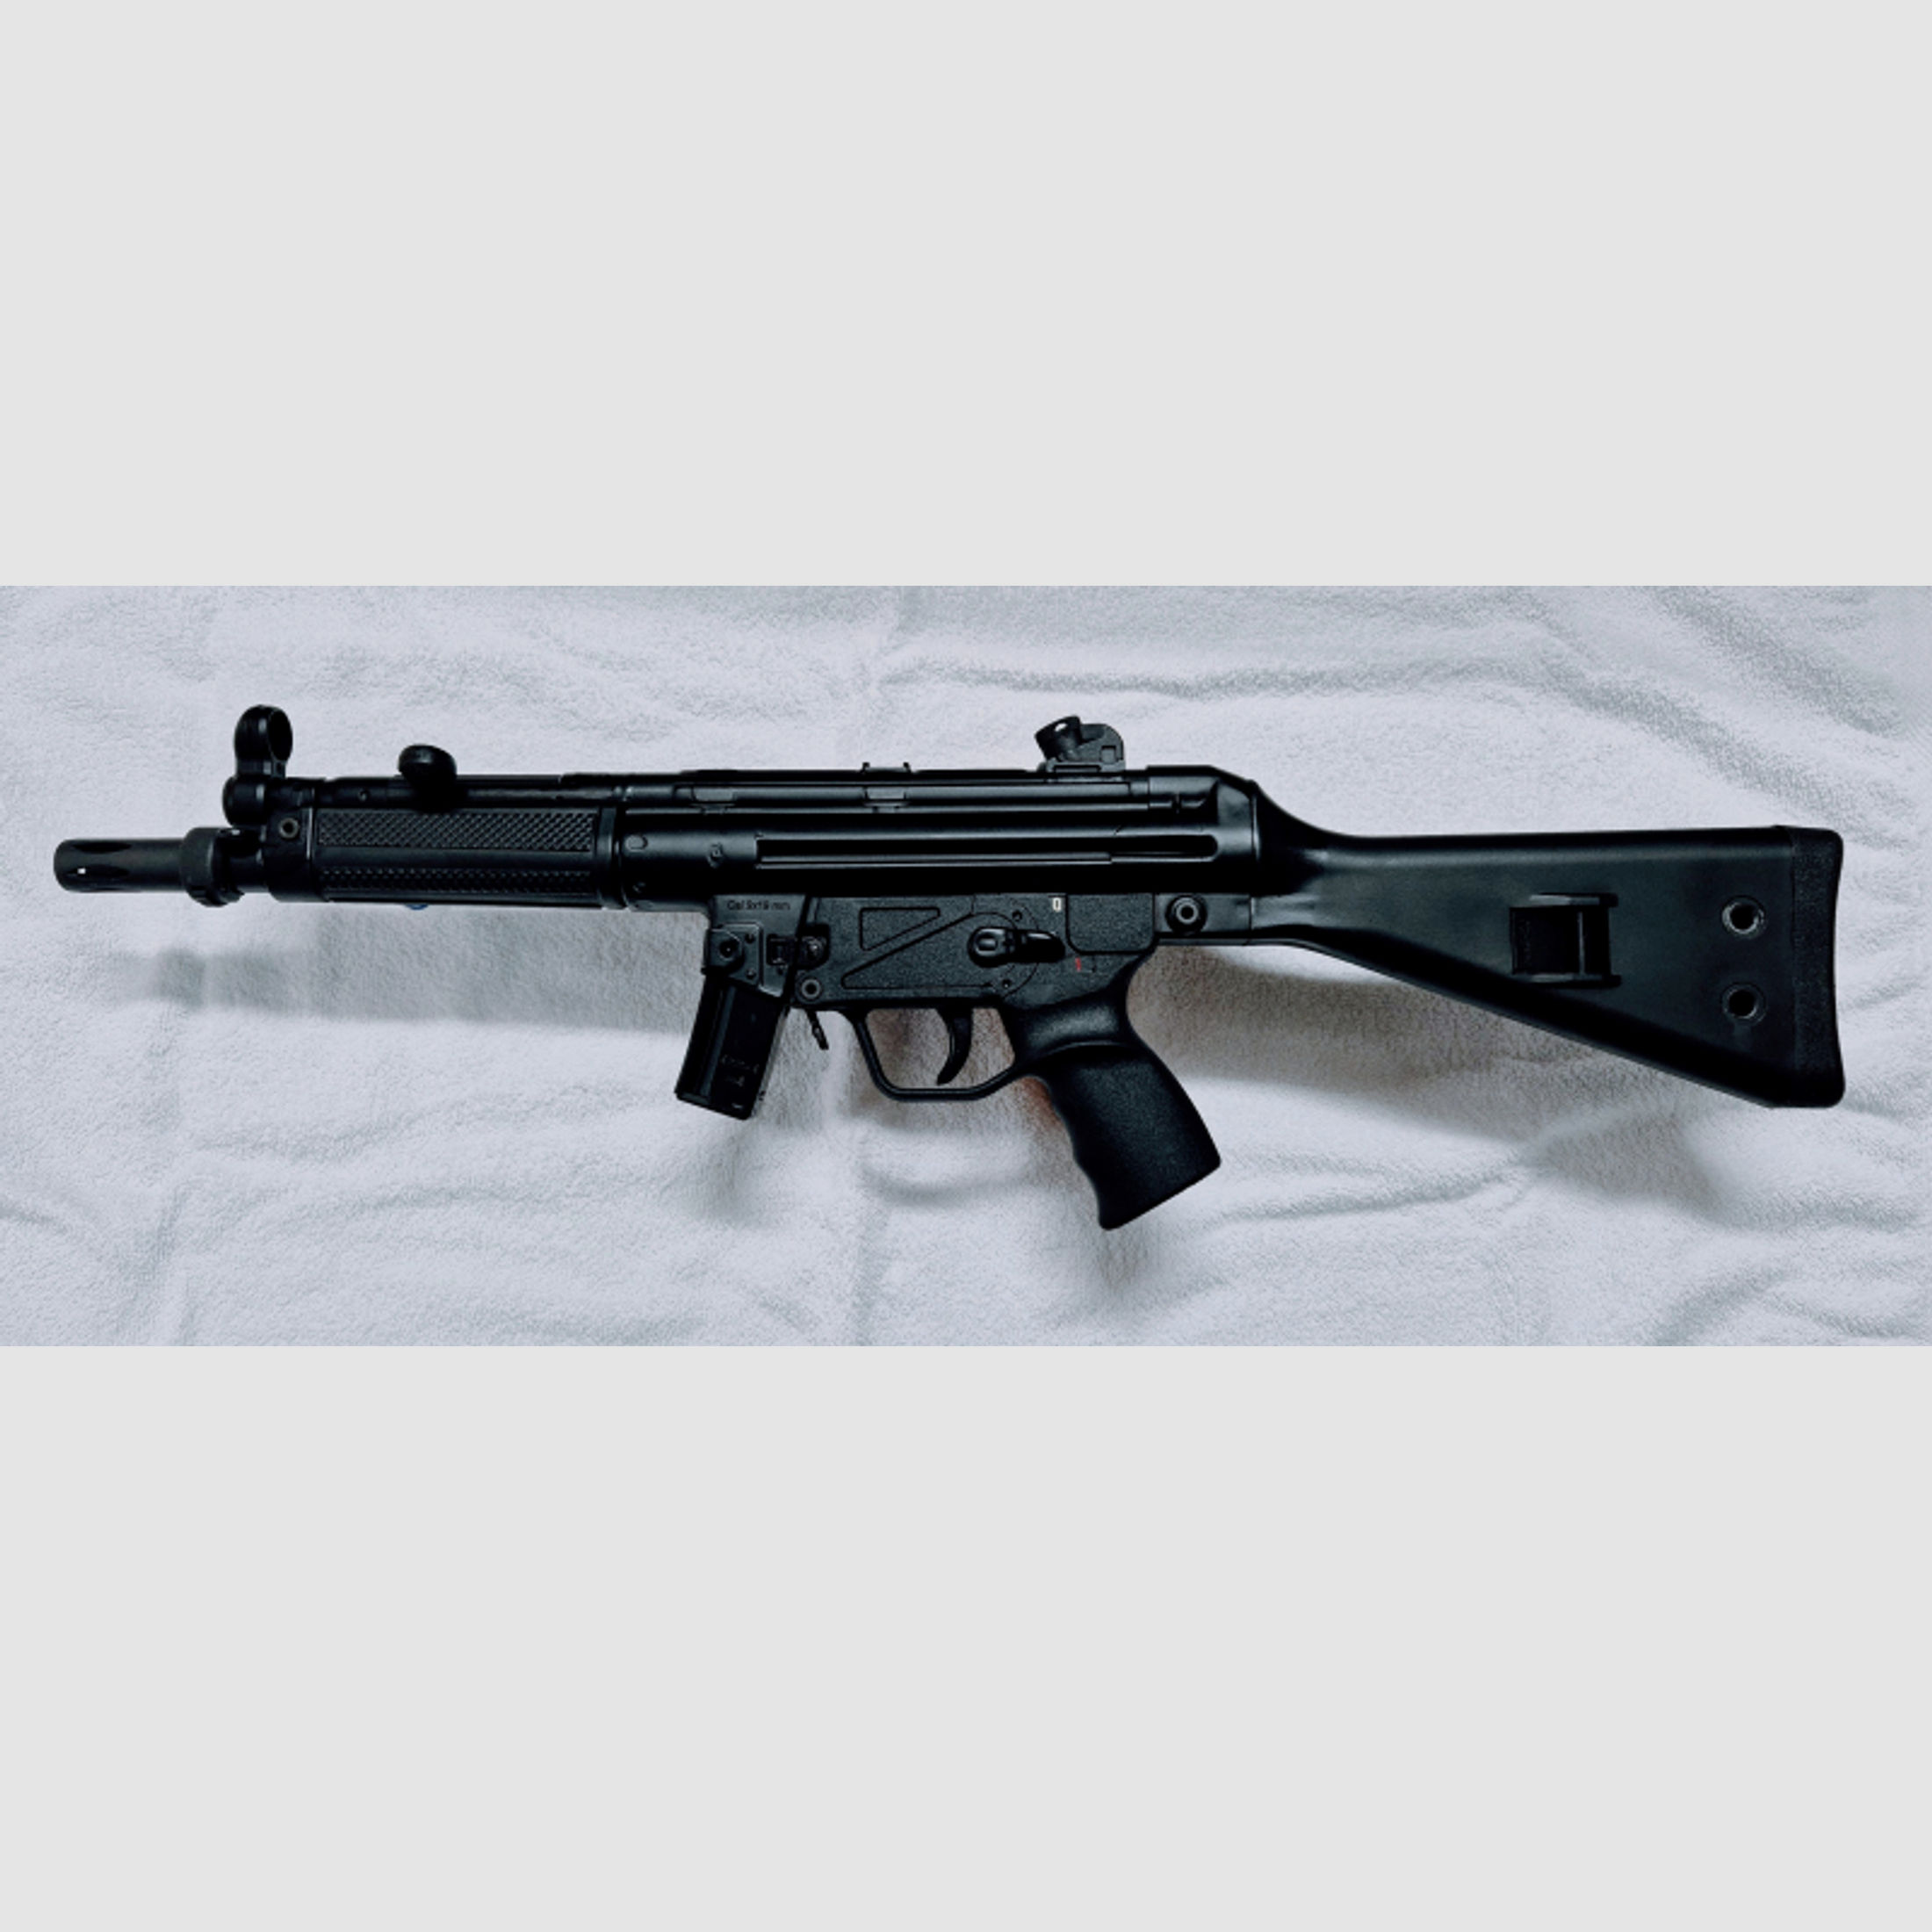 Halbautomatisches Gewehr MKE 94 / MP5 A2